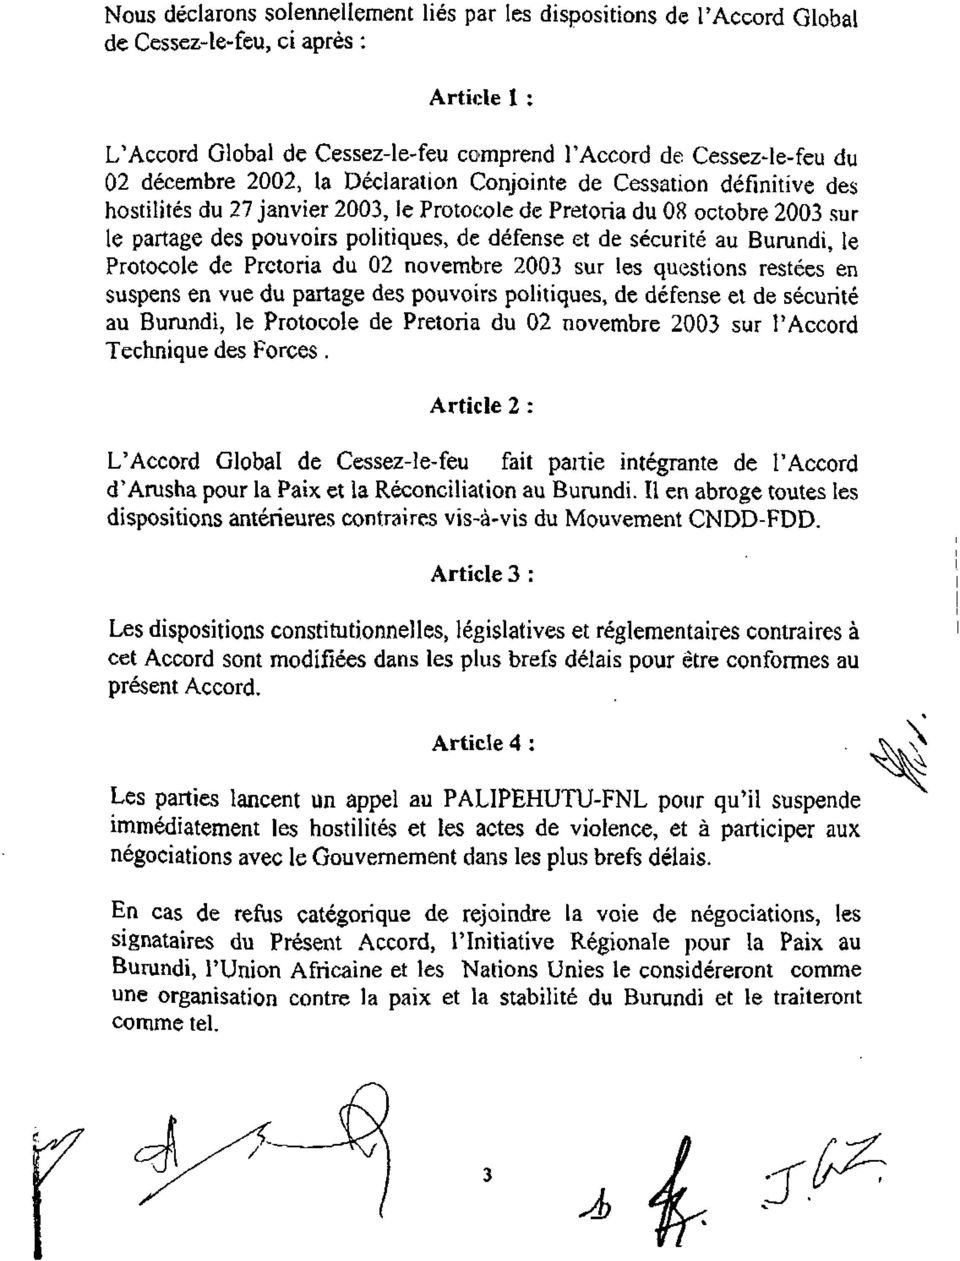 au Burundi, le Protocole de Pretoria du 02 novembre 2003 sur les questions restées en suspens en vue du partage des pouvoirs politiques, de défense et de sécurité au Burundi, le Protocole de Pretoria